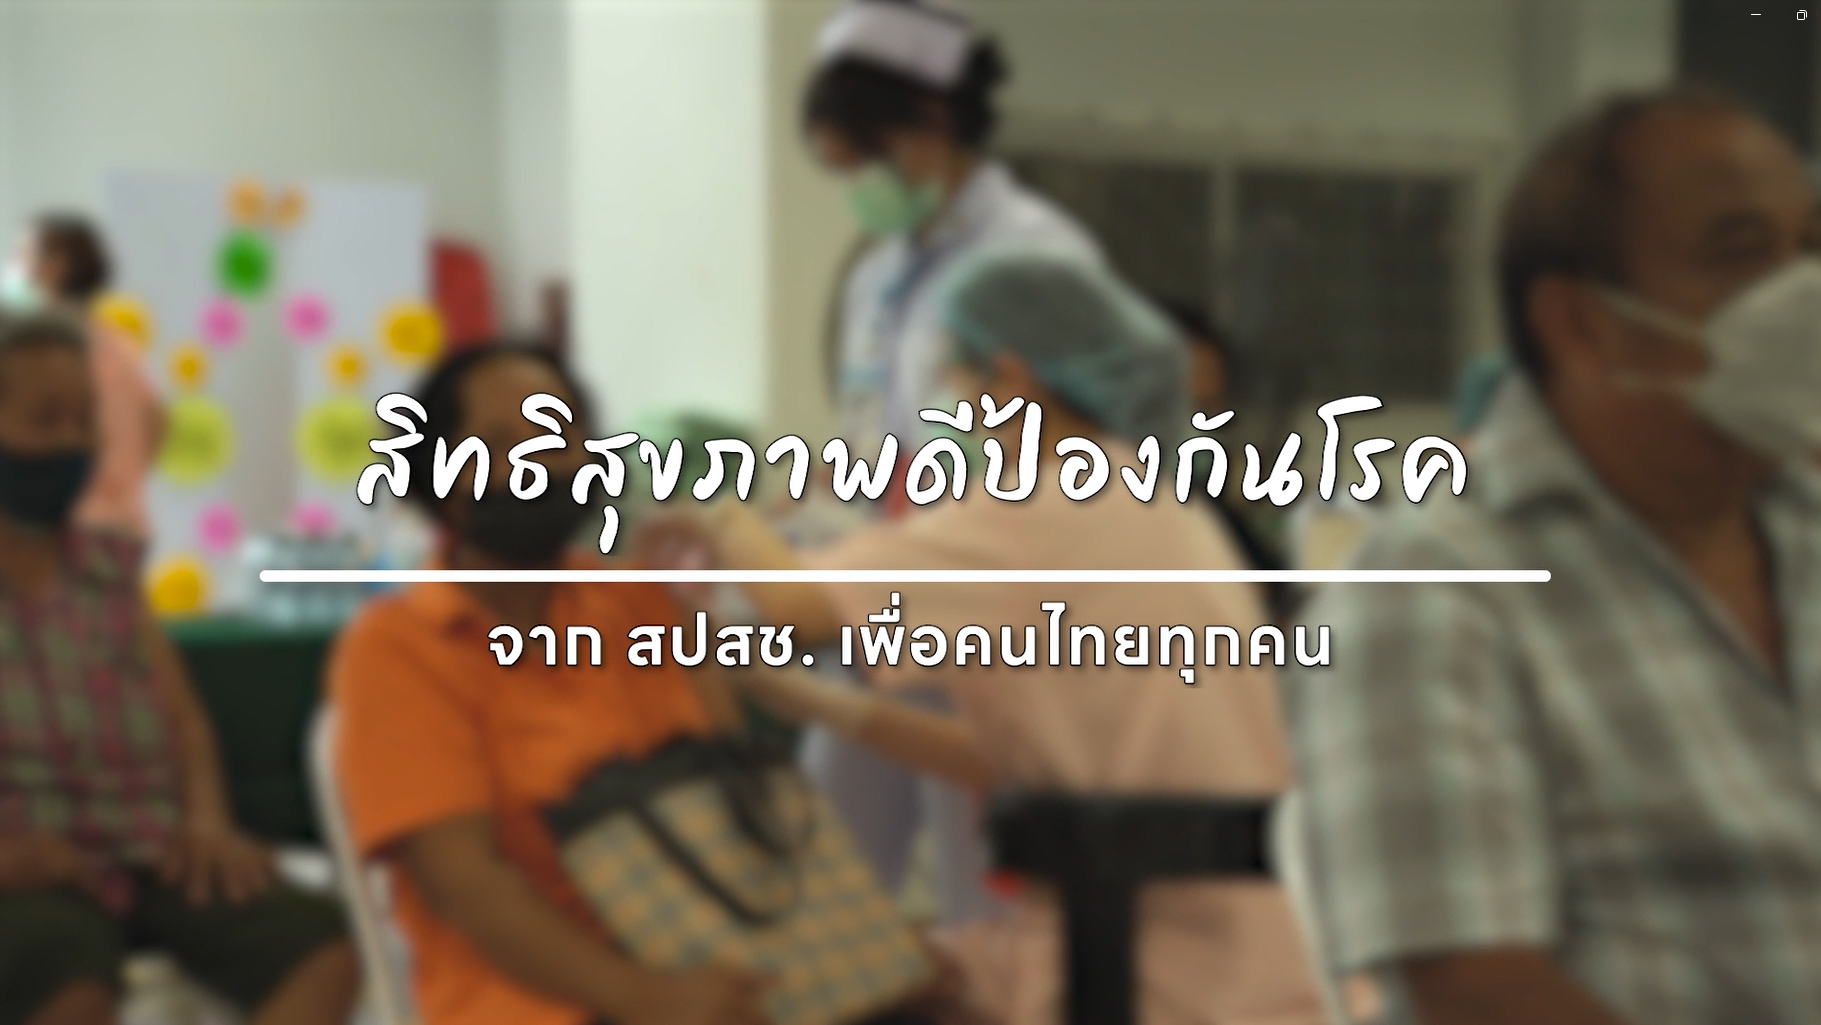 สิทธิสุขภาพดีป้องกันโรค เพื่อคนไทยทุกคน (1080)